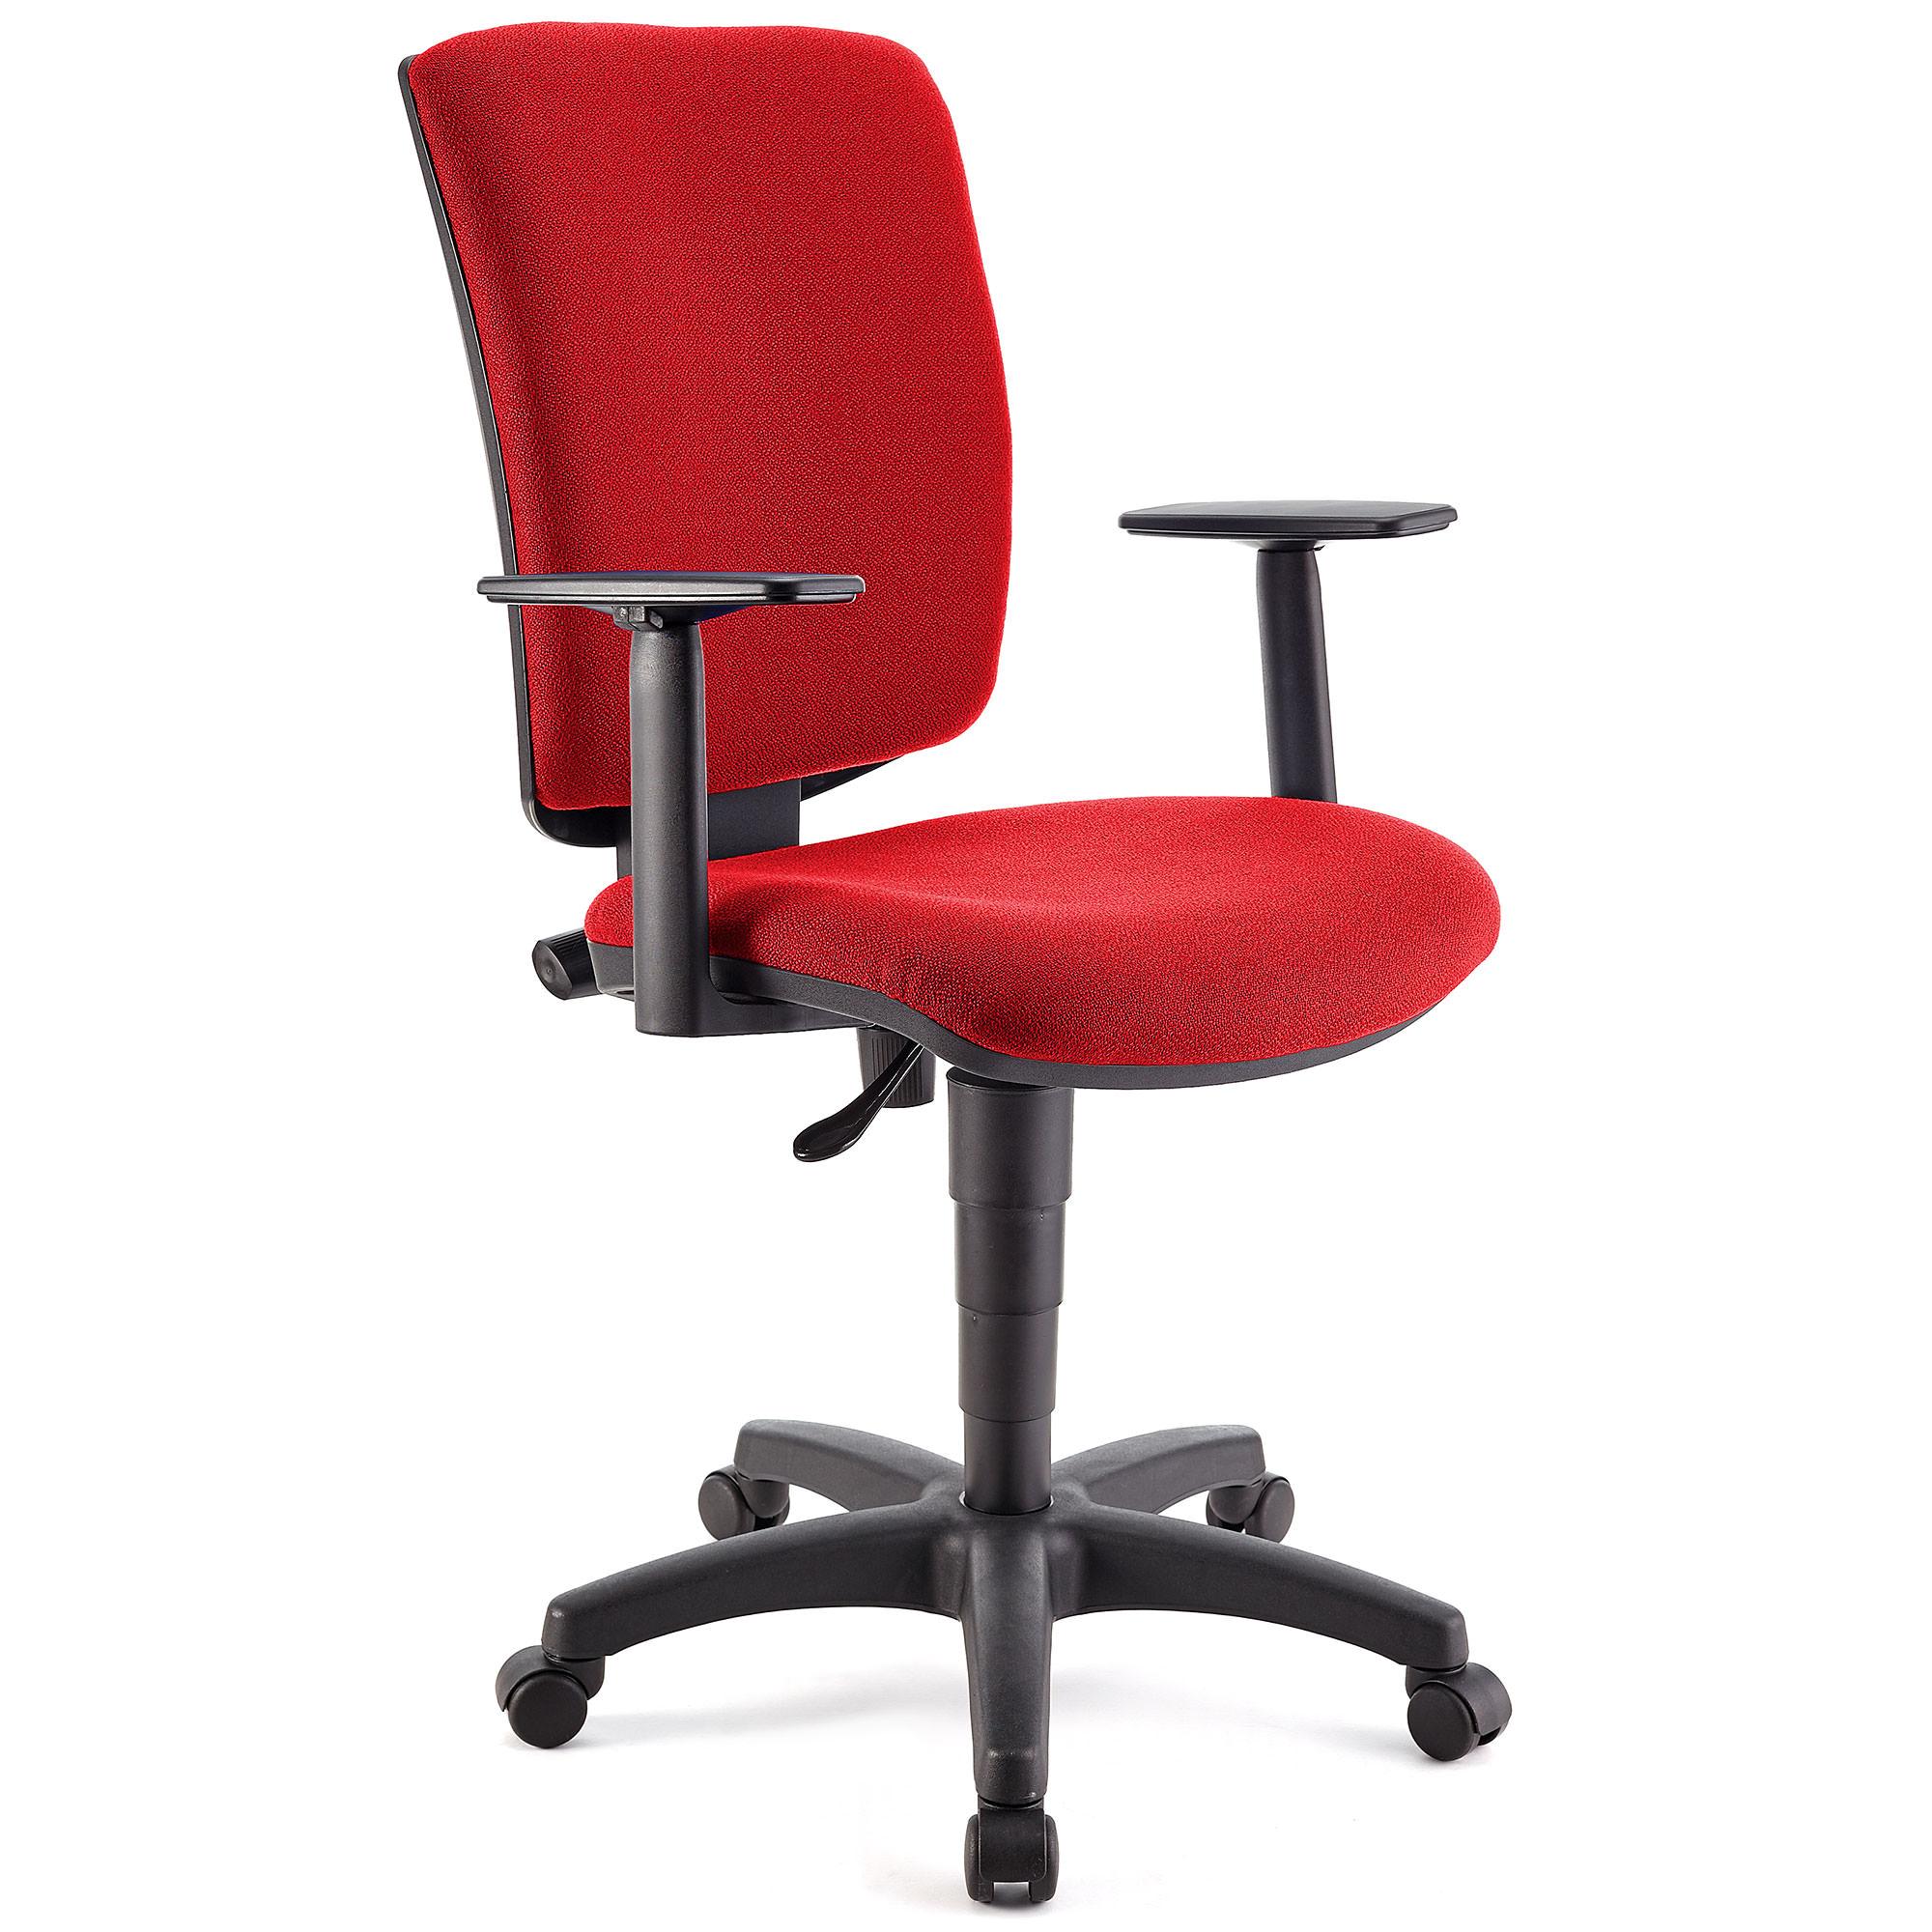 Bürostuhl ATLAS PLUS STOFF, verstellbare Rücken- und Armlehnen, dicke Polsterung, Farbe Rot